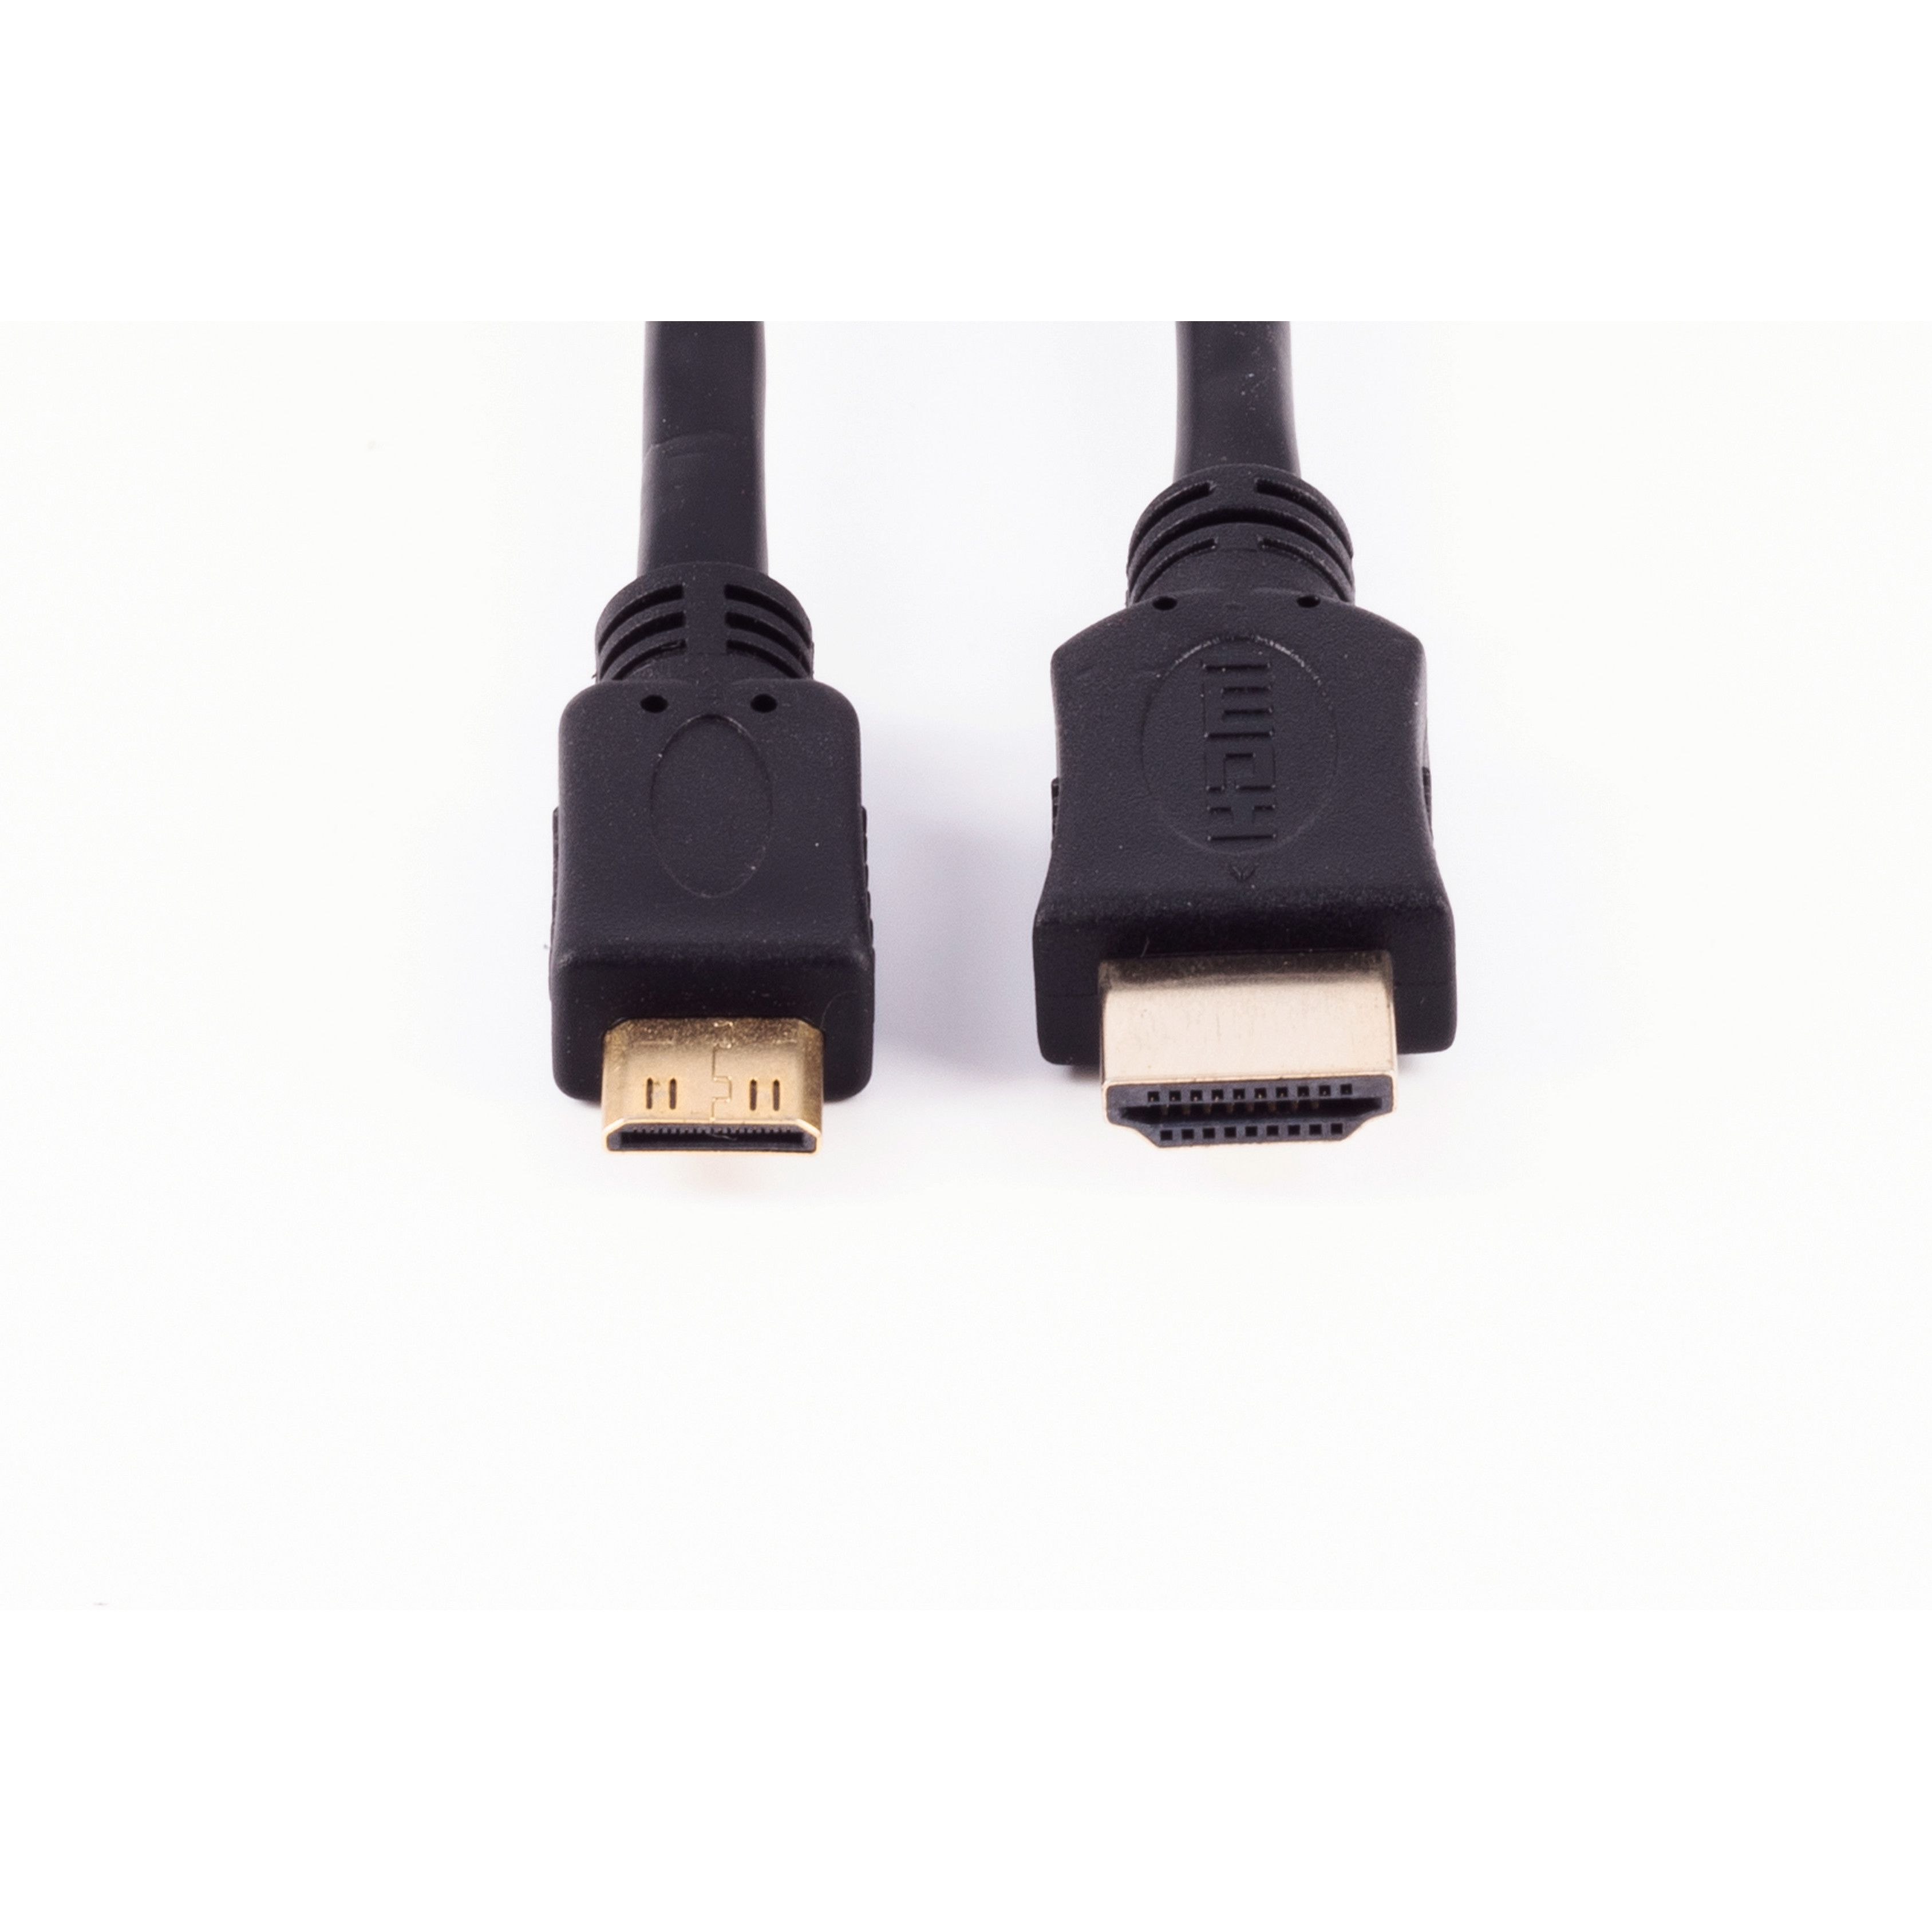 C-Stecker SHIVERPEAKS / HDMI HDMI Kabel A-Stecker HEAC HDMI verg. 3m